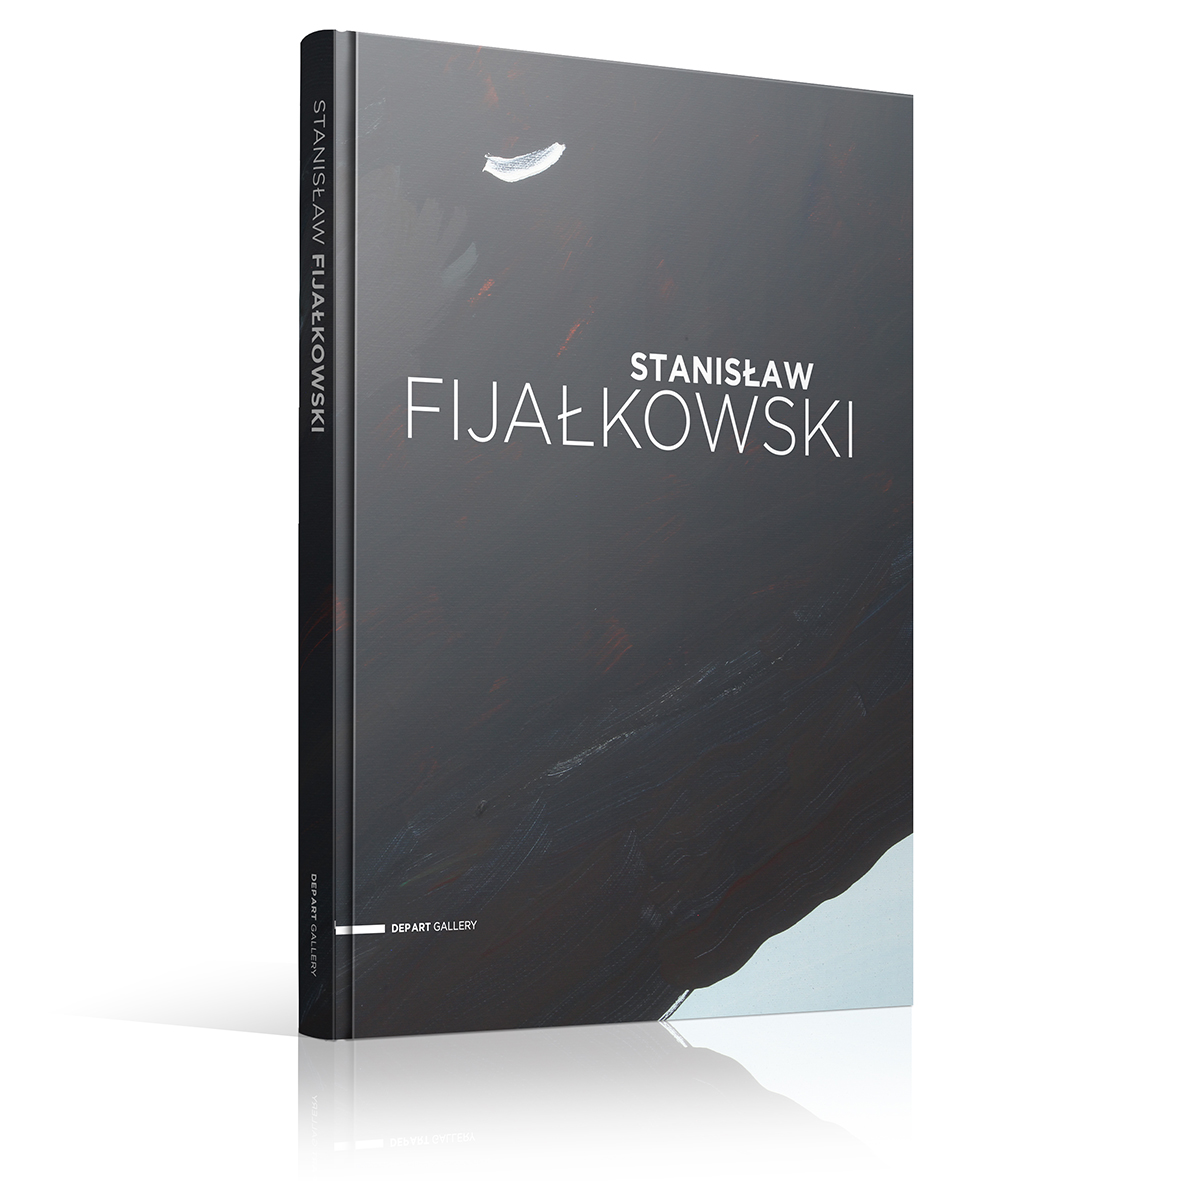 Stanislaw-Fijalkowski-